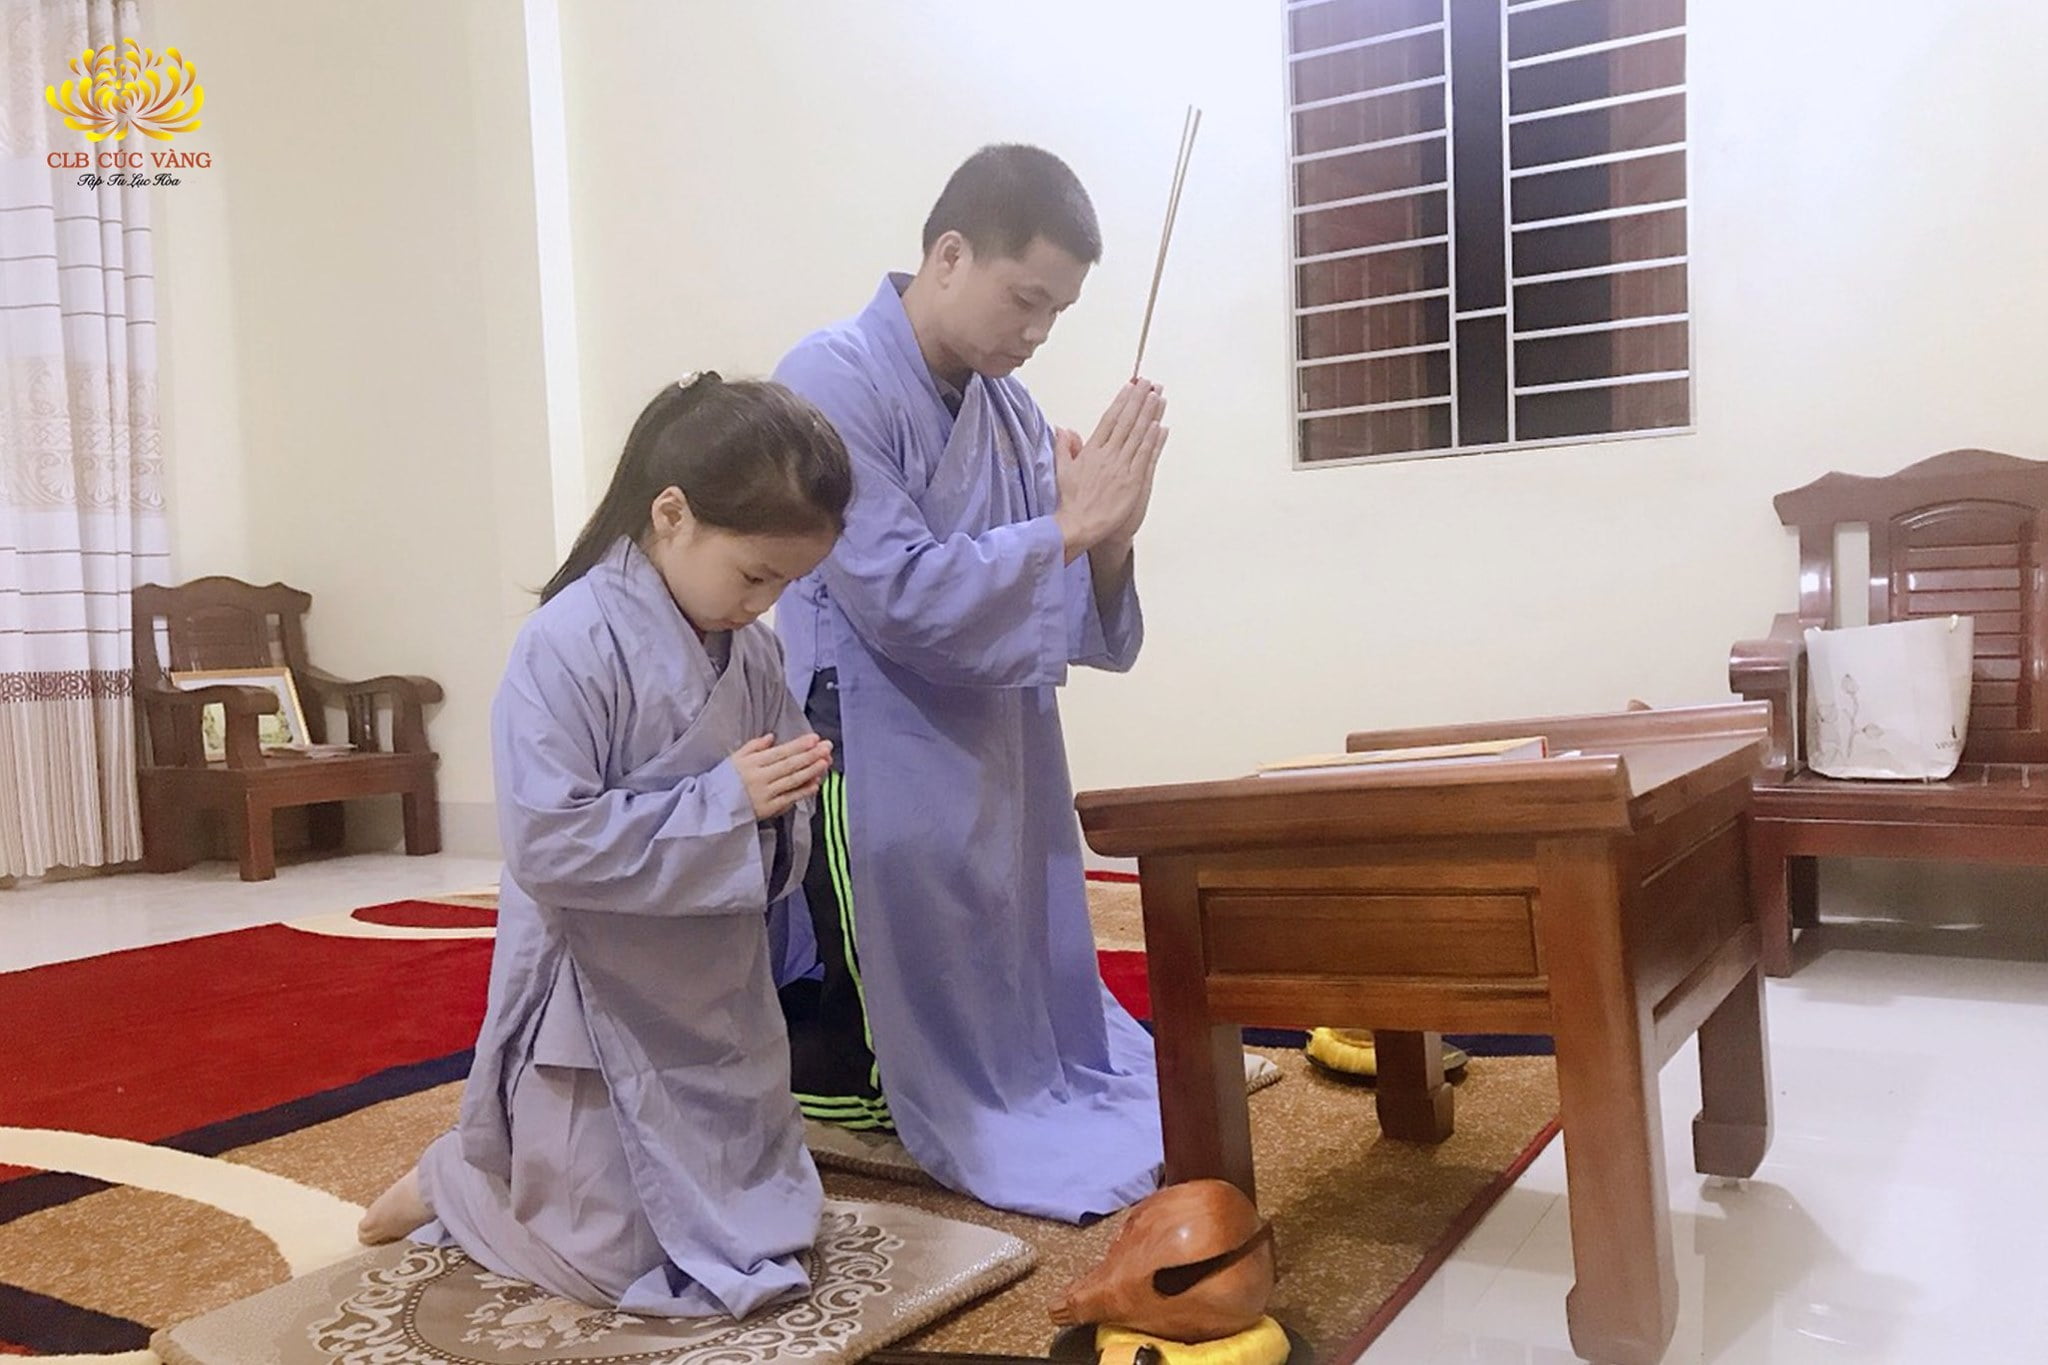 Bạn Phật tử nhí trong đạo tràng Minh Niệm - Lạng Sơn trong thời gian nghỉ học cũng tham gia tu tập cùng với bố của mình